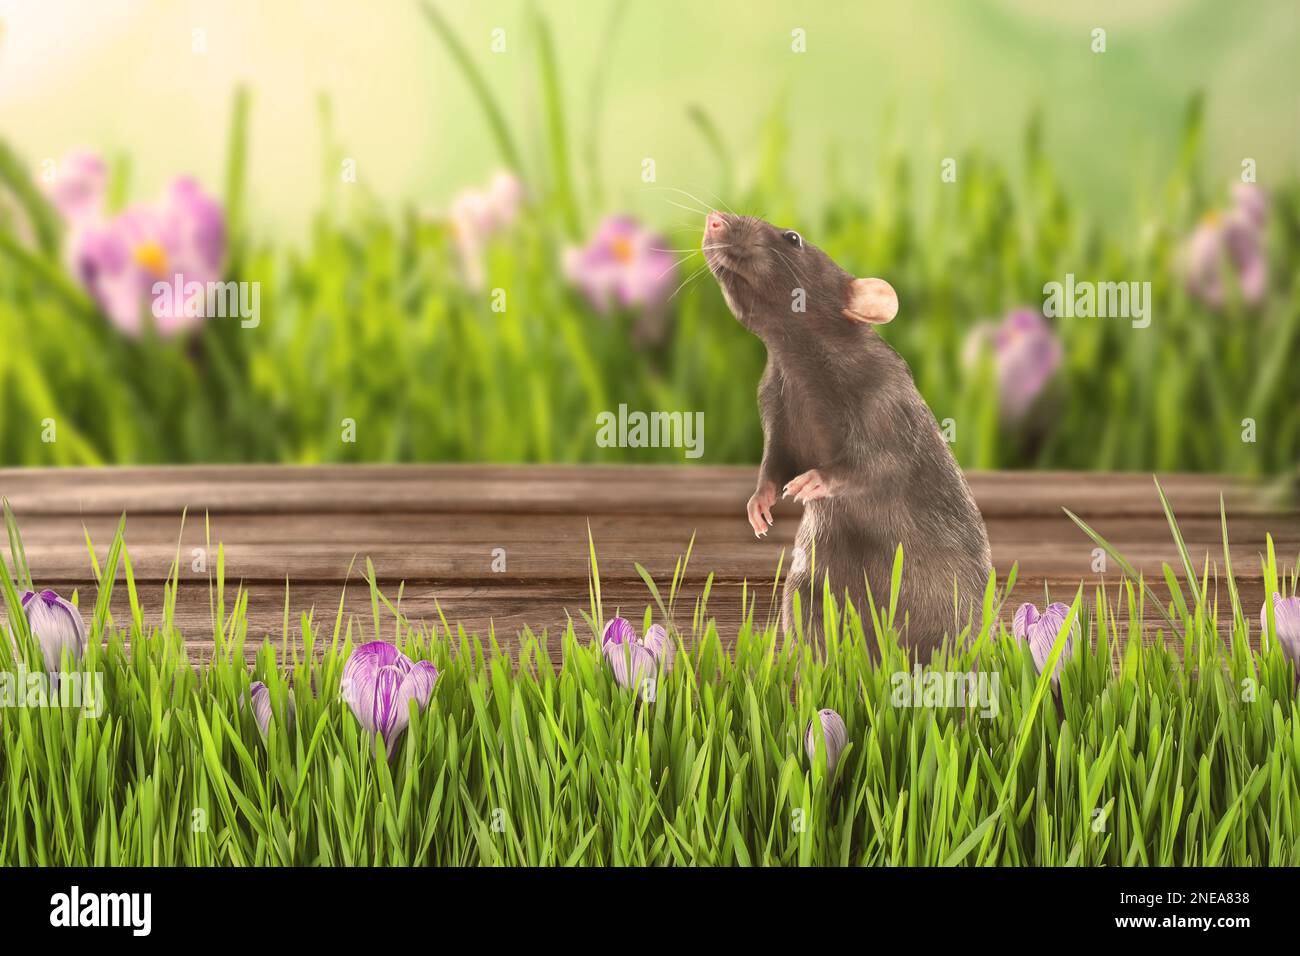 Joli petit rat sur une surface en bois près de l'herbe verte en plein air Banque D'Images